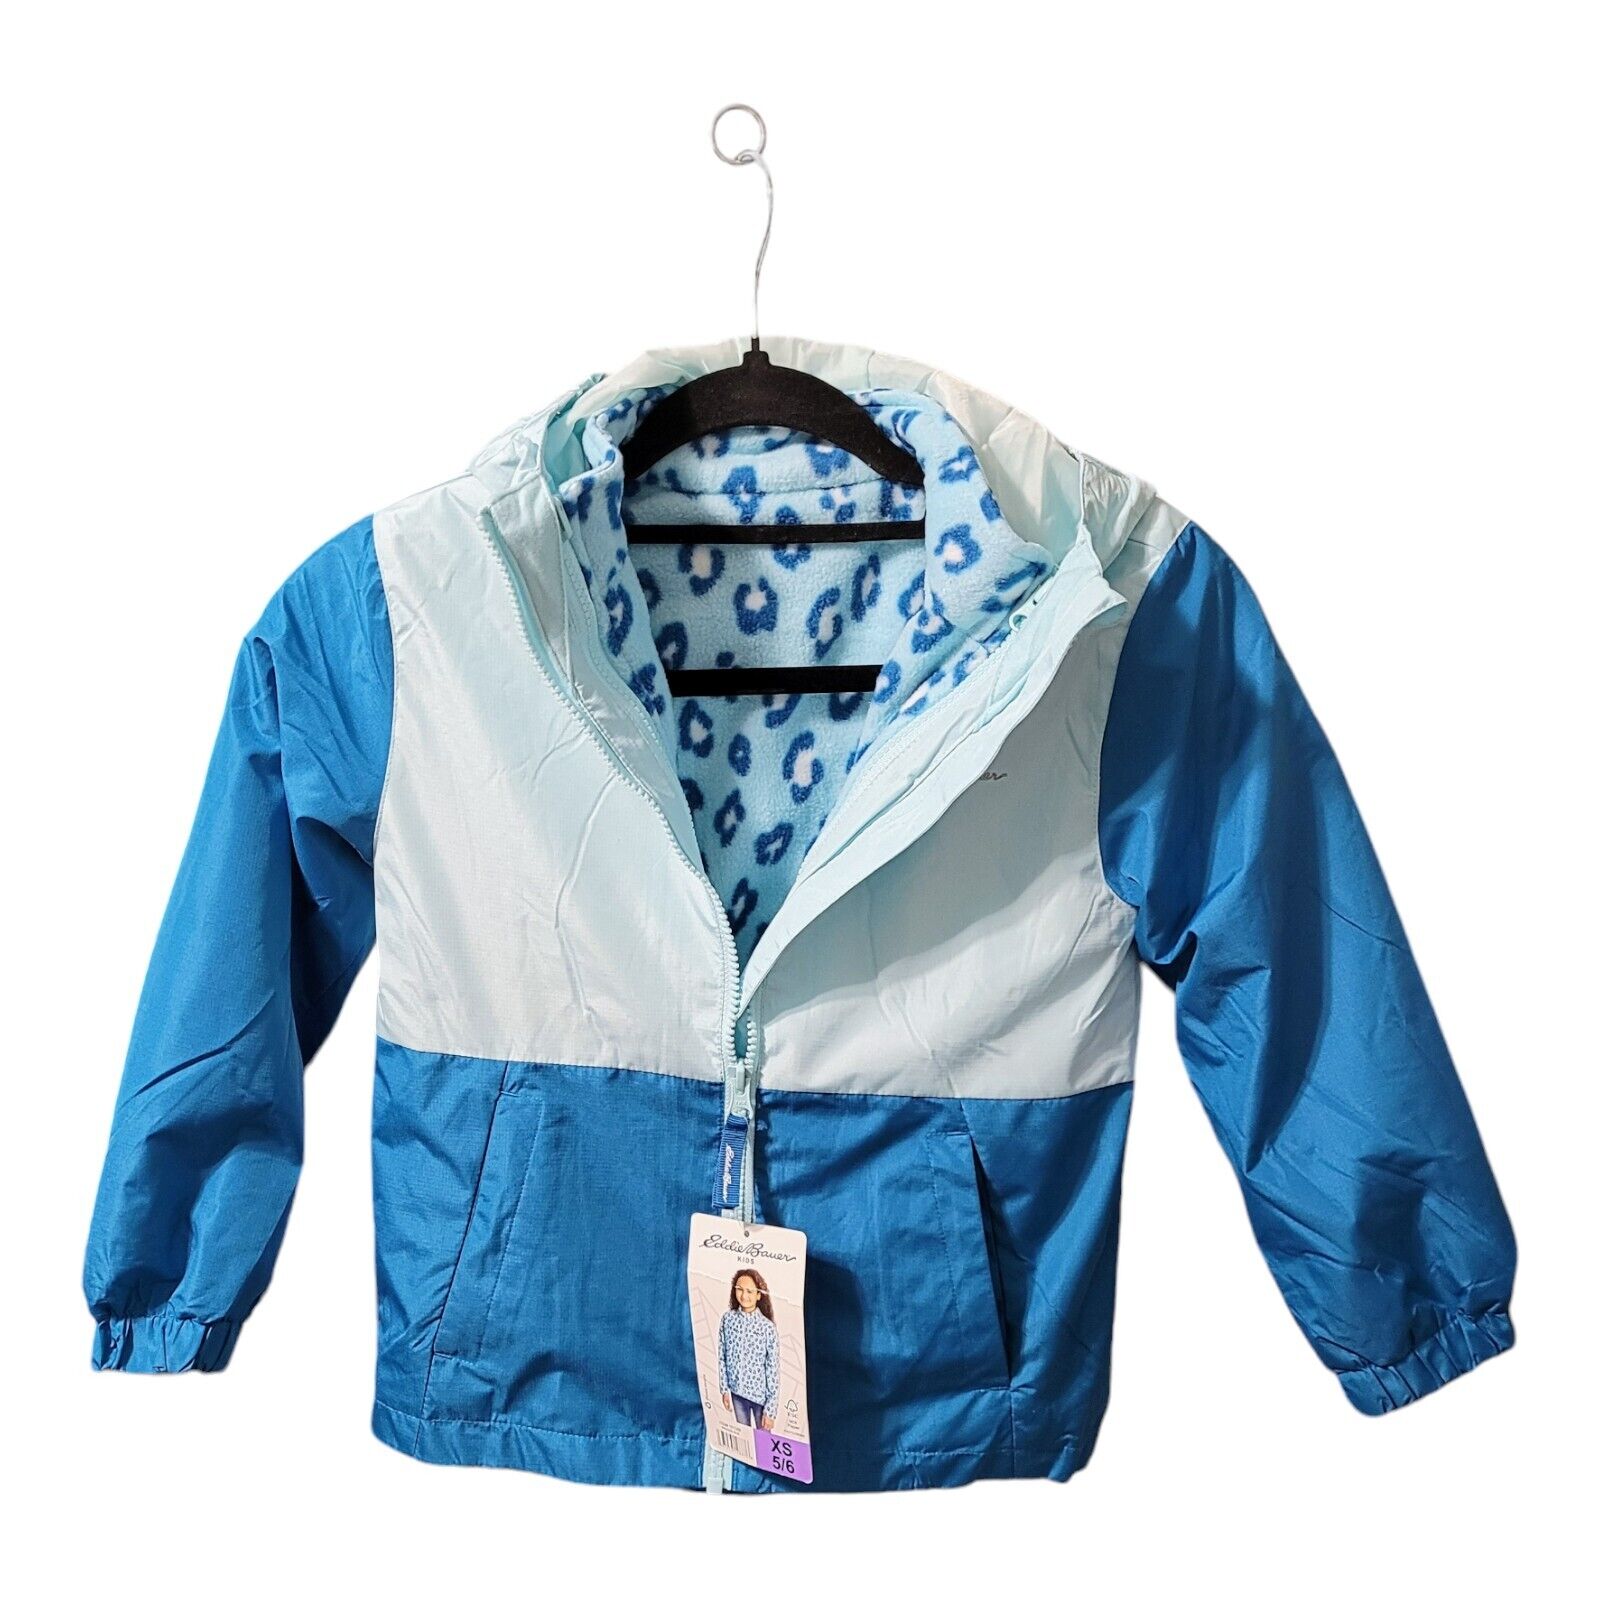 Eddie Bauer Girls 3-in-1 Jacket Blue Size 4 Winter Warmth School Travel Gift Eddie Bauer - фотография #2